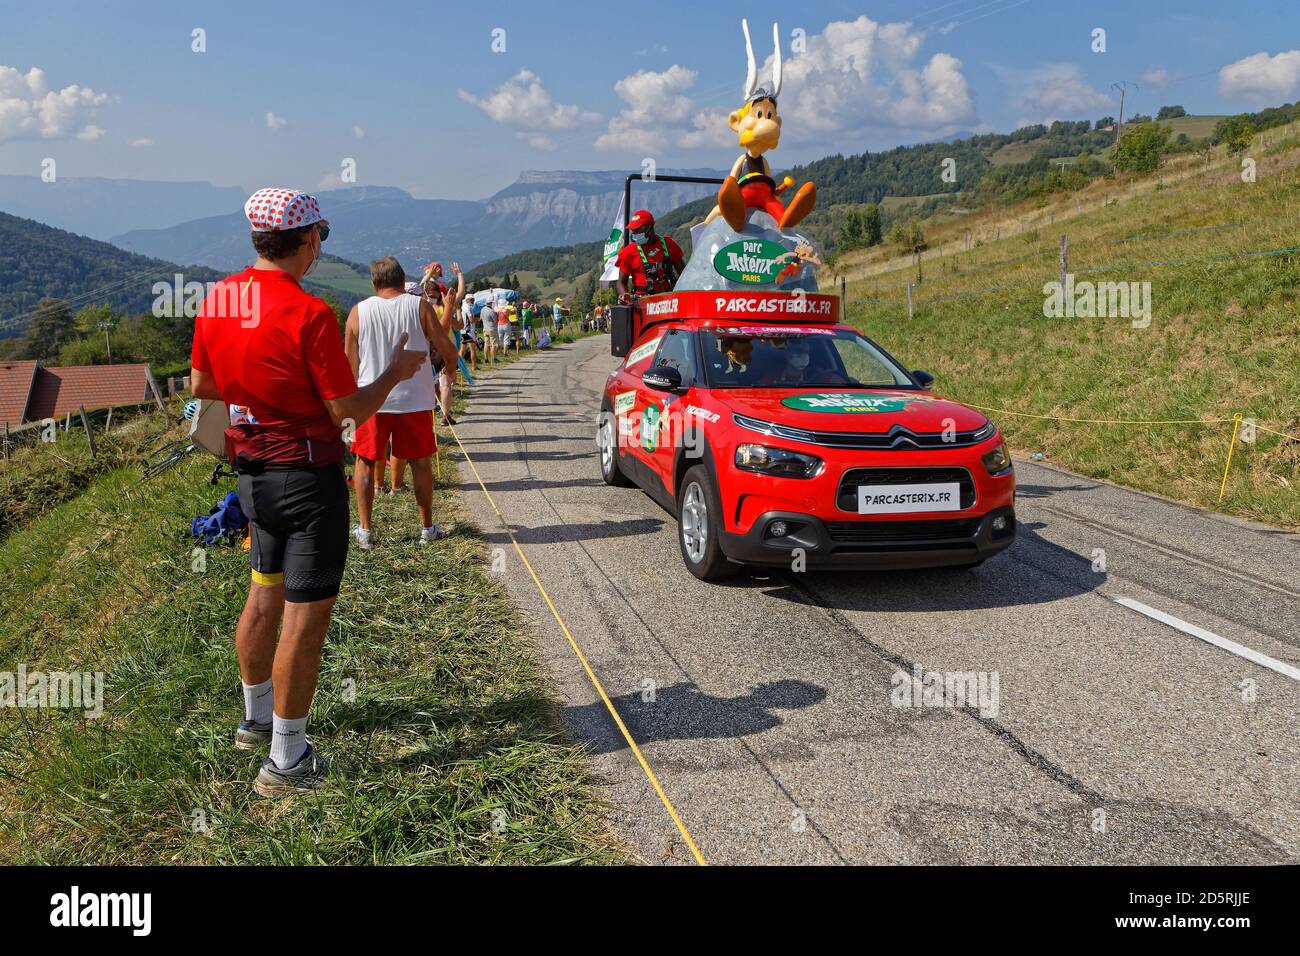 REVEL, FRANCE, 15 settembre 2020 : spettatori e carovane pubblicitarie sulle strade del Tour de France. Tour de France è stato descritto come il motto mondiale Foto Stock